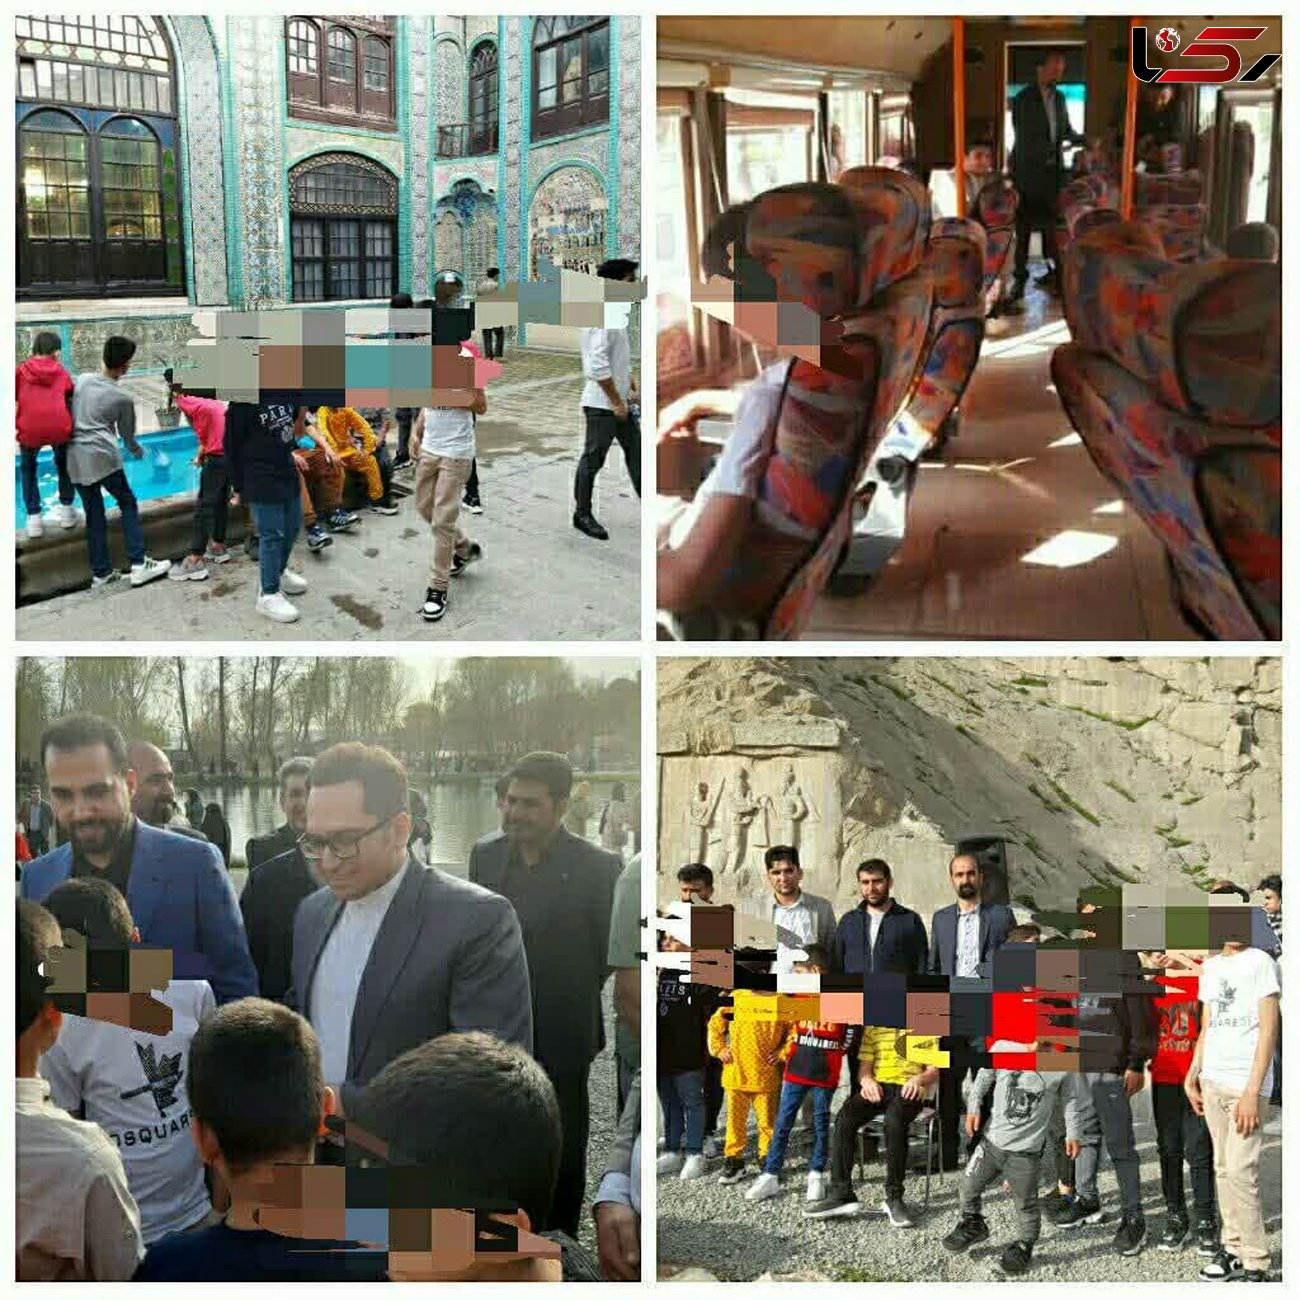 تاق بستان، فرزندان خود را با مهر به آغوش کشید/ بازدید کودکان بی سرپرست از اماکن گردشگری کرمانشاه + فیلم